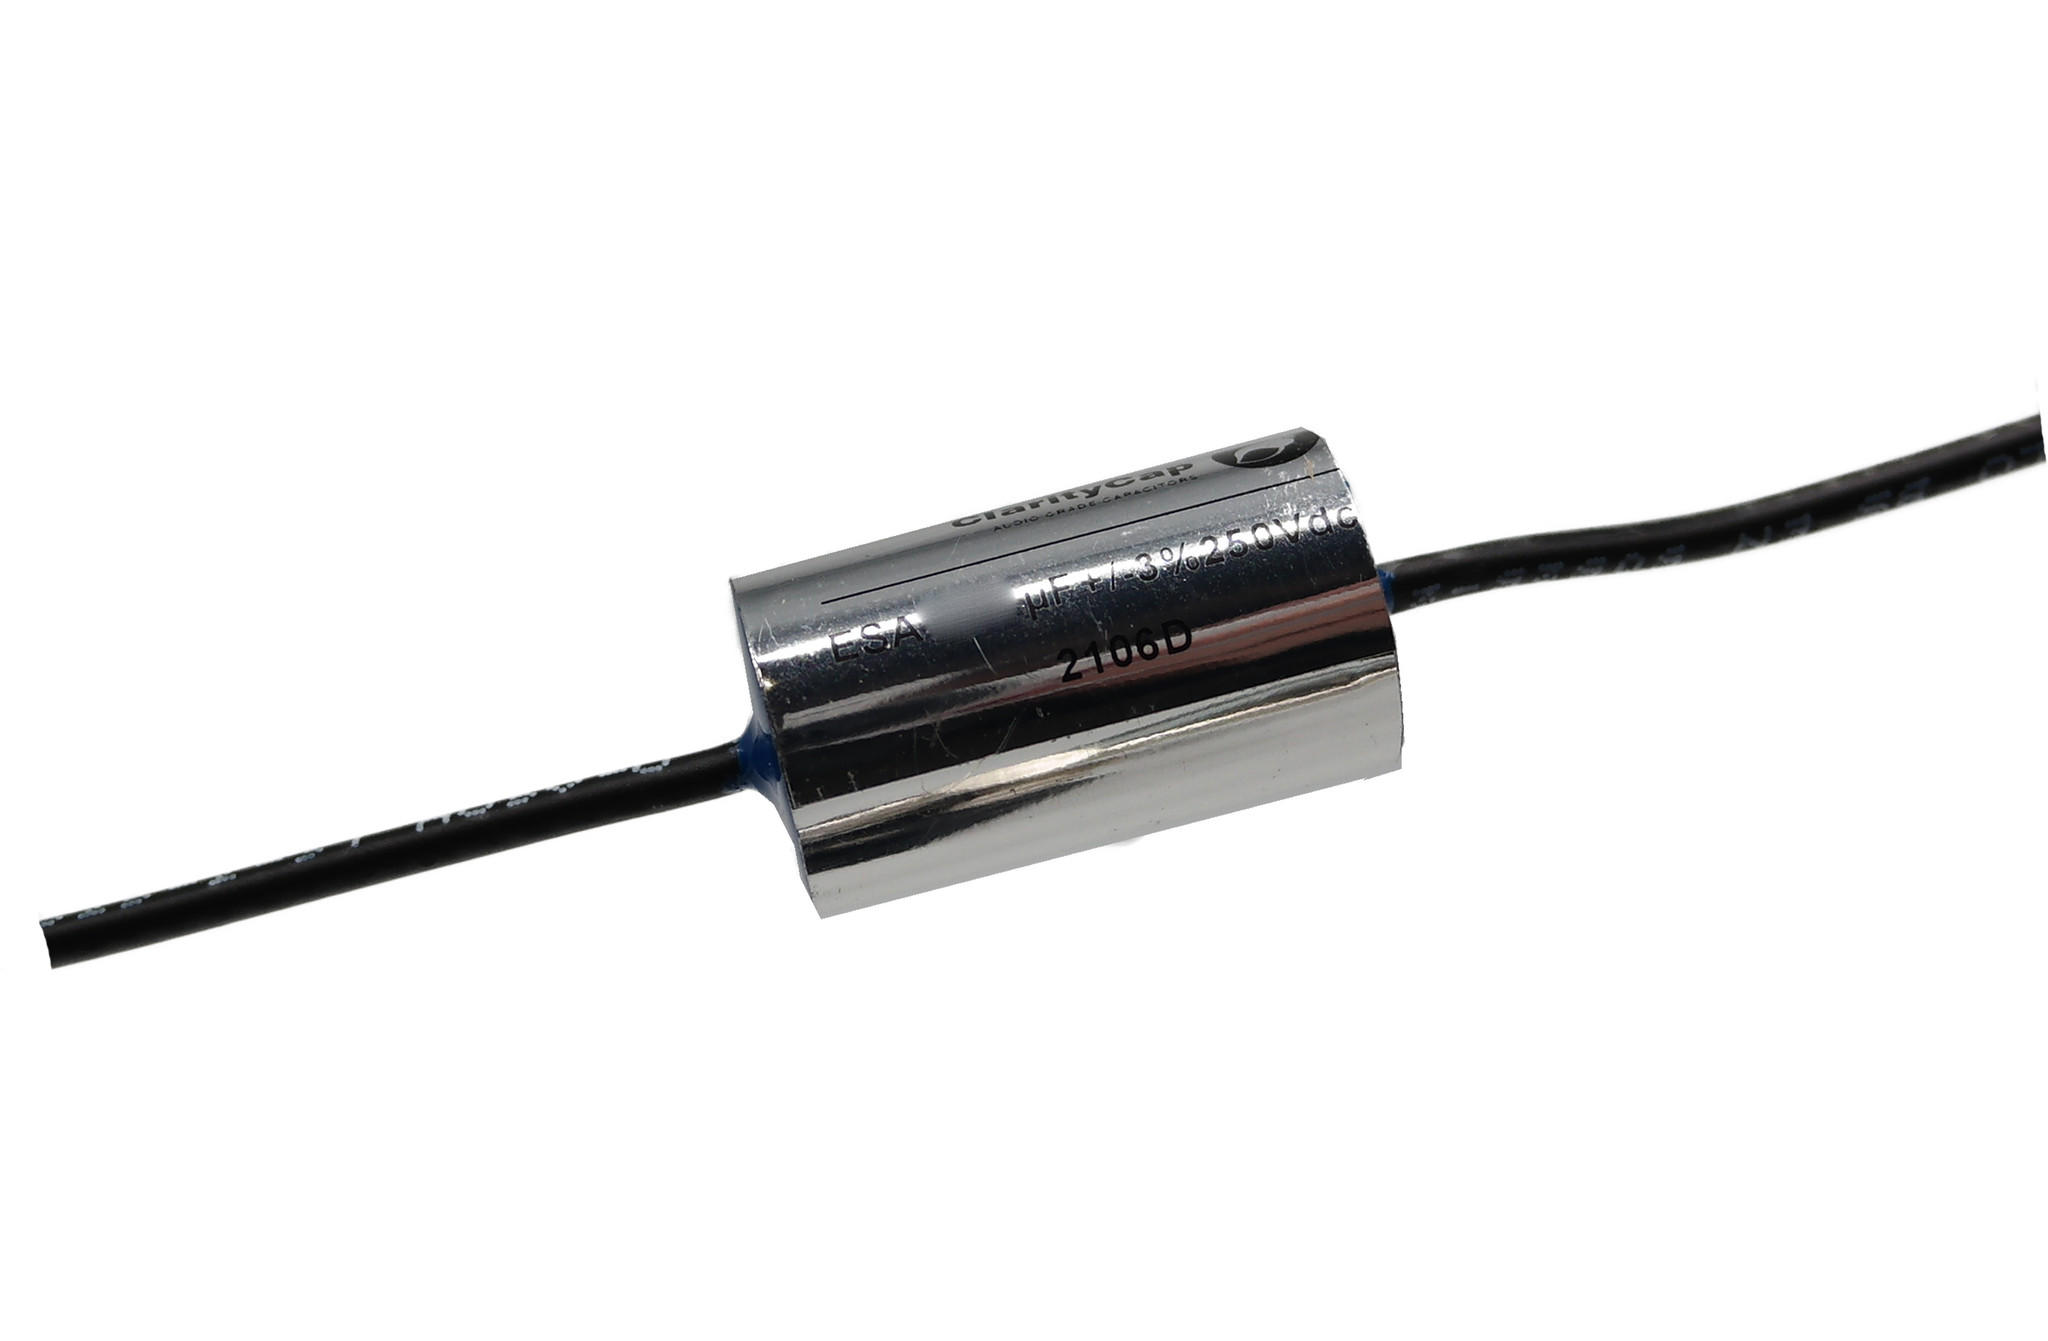 Condensatoare - Condensator film ClarityCap ESA2u7H250Vdc | 2.7 µF | 3% | 250 V, audioclub.ro